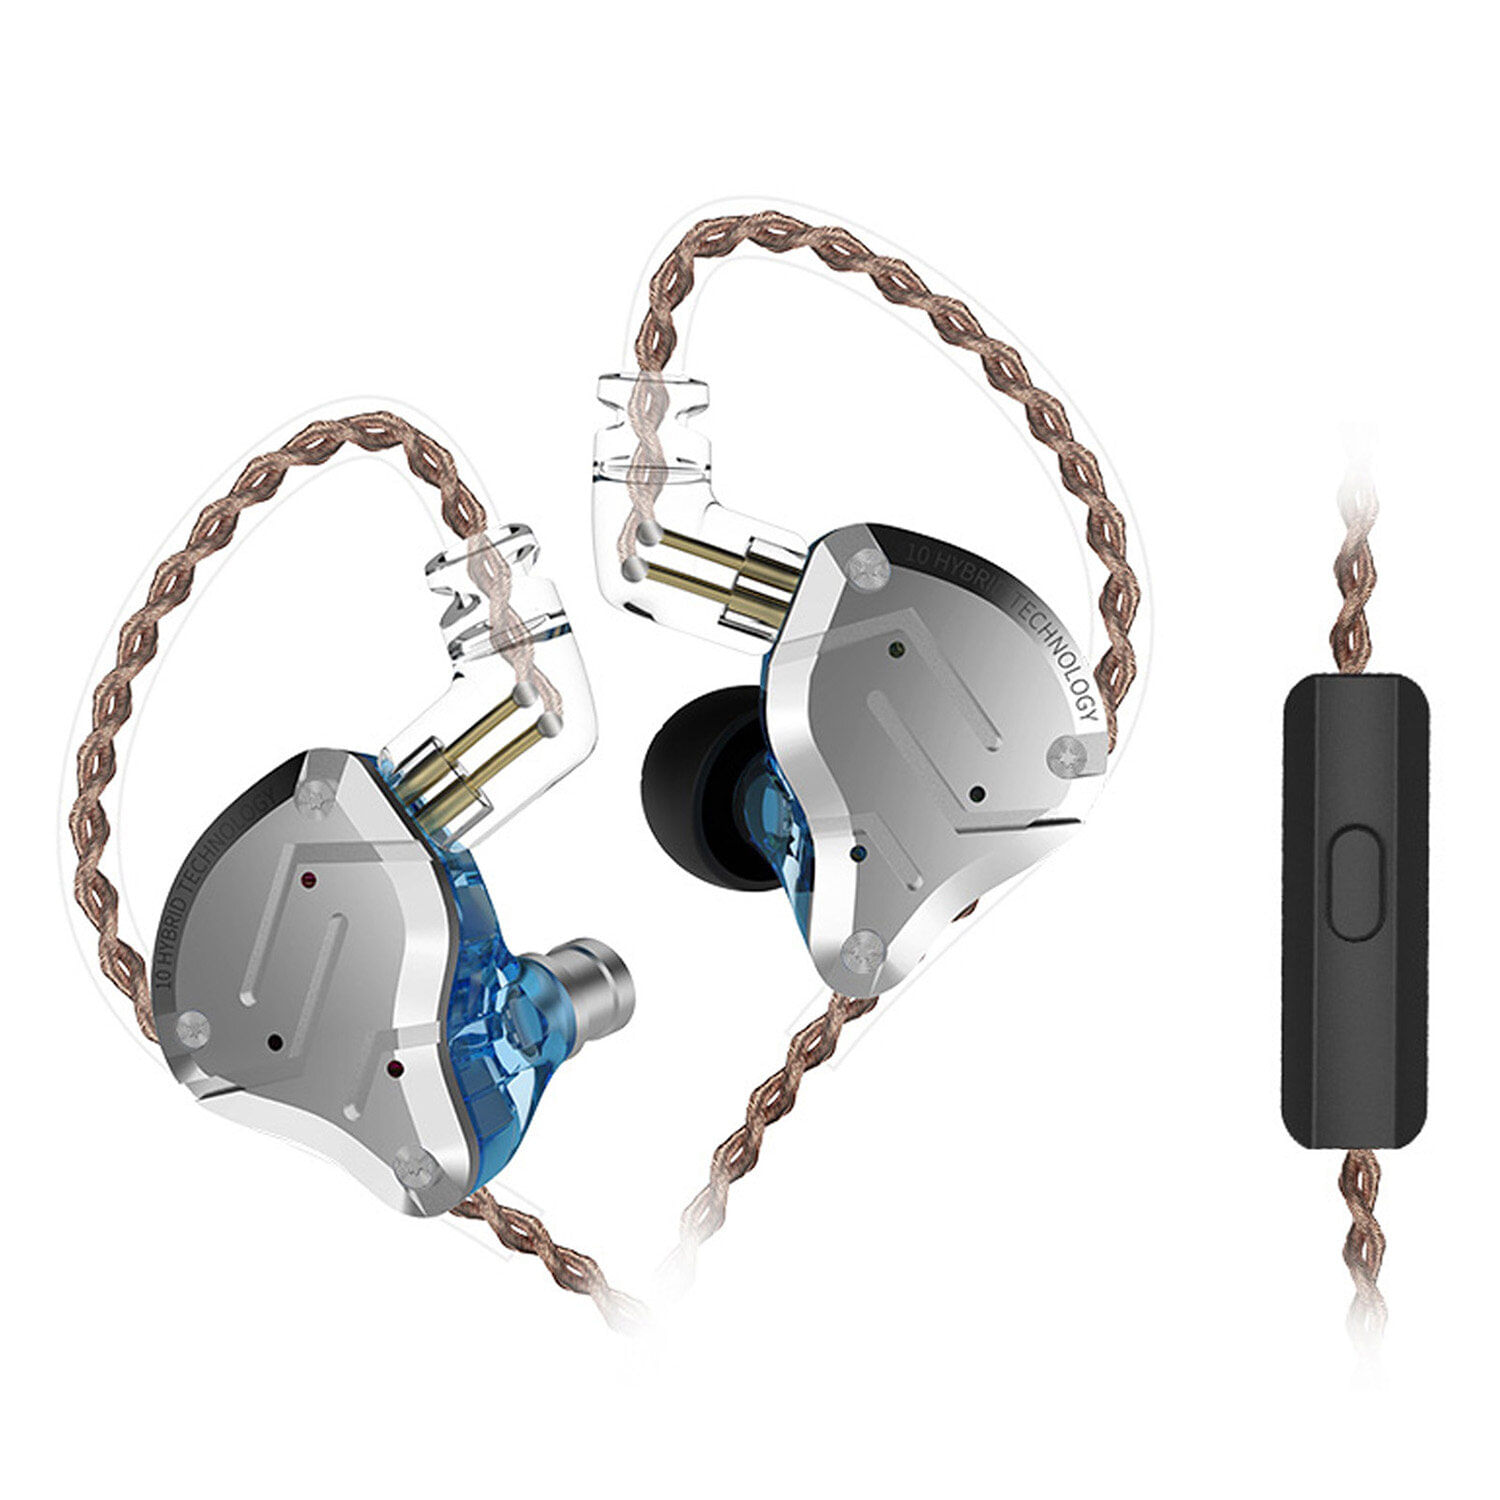 Audifonos Intrauditivos Con Cable Kz Zs10 Pro Hifi Music Con Micrófono Azul